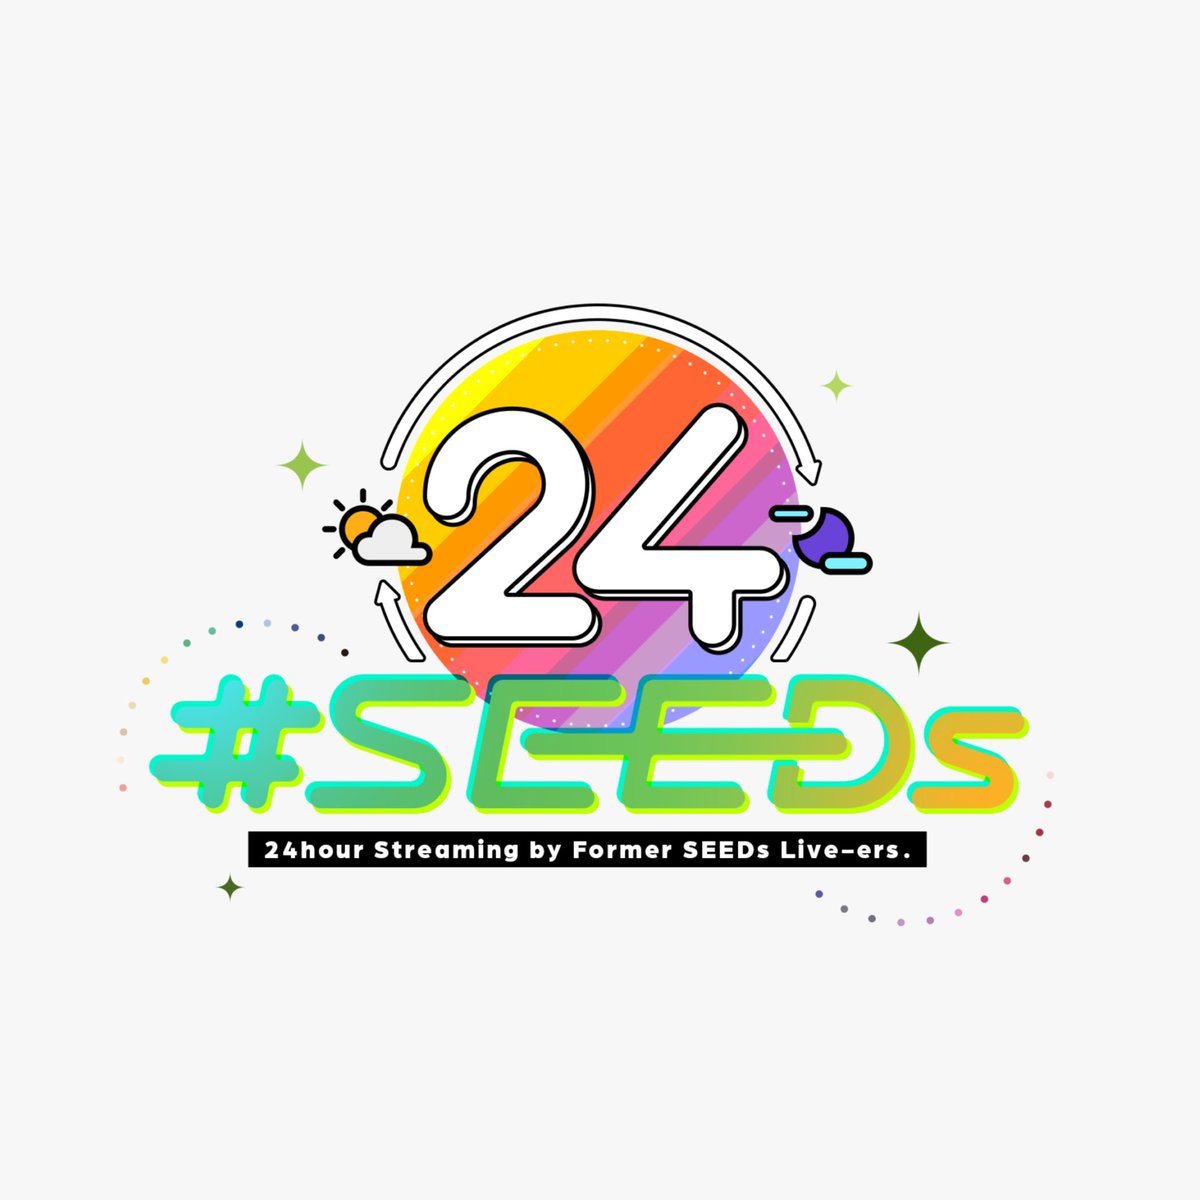 [Vtub] 彩虹seeds 06.11-12舉辦24小時生放送